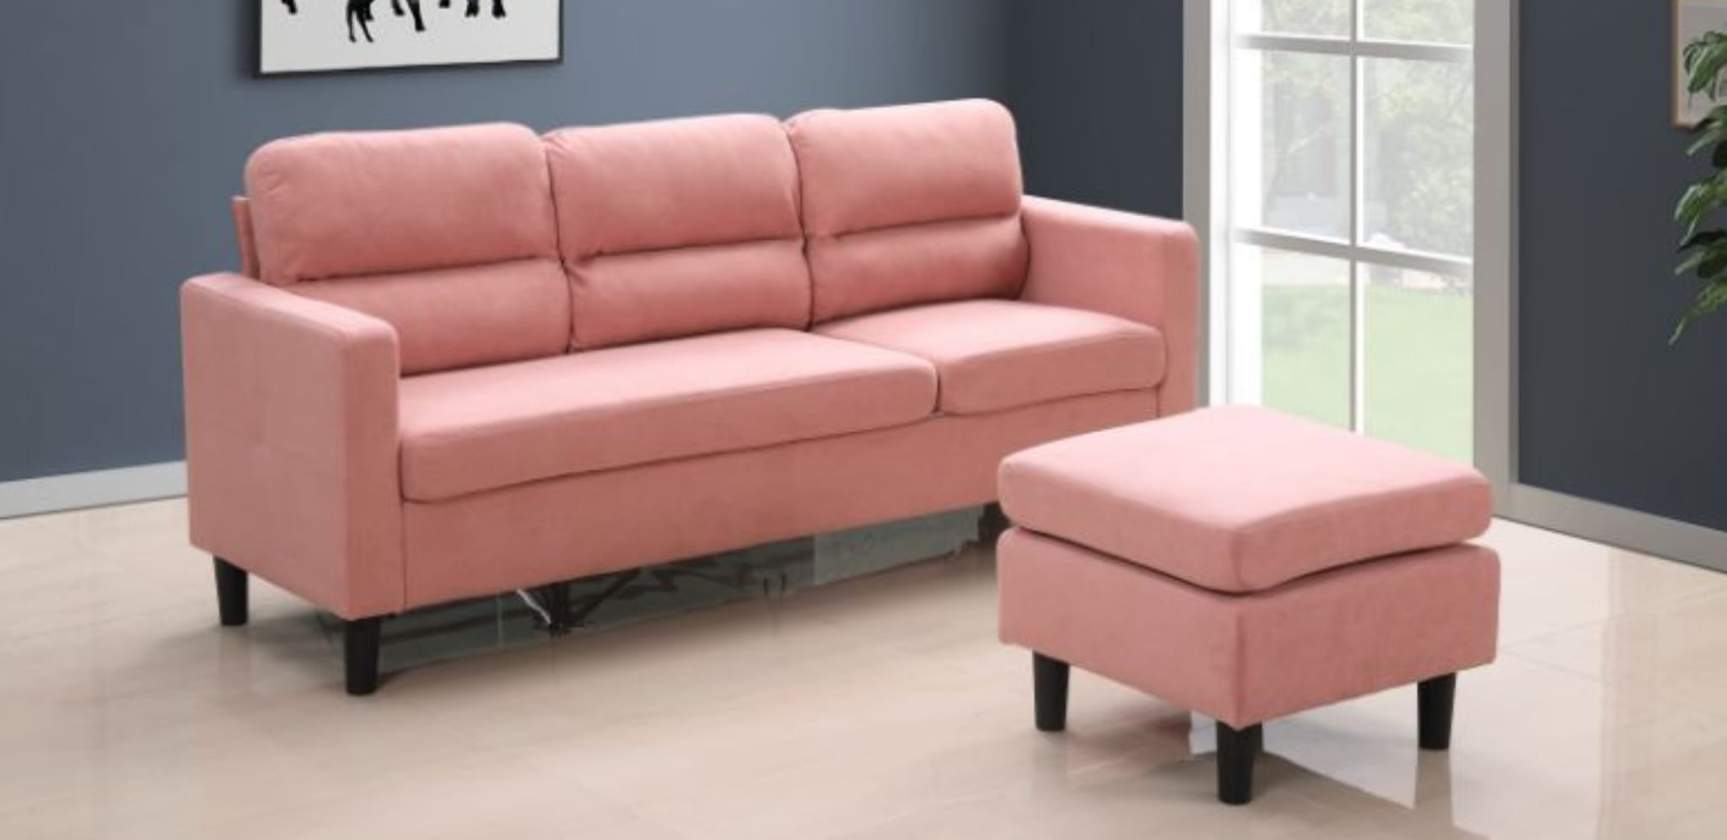 SalesAway Furniture |  | 9040 Leslie St Unit 3, Richmond Hill, ON L4B 3M4, Canada | 6478573877 OR +1 647-857-3877